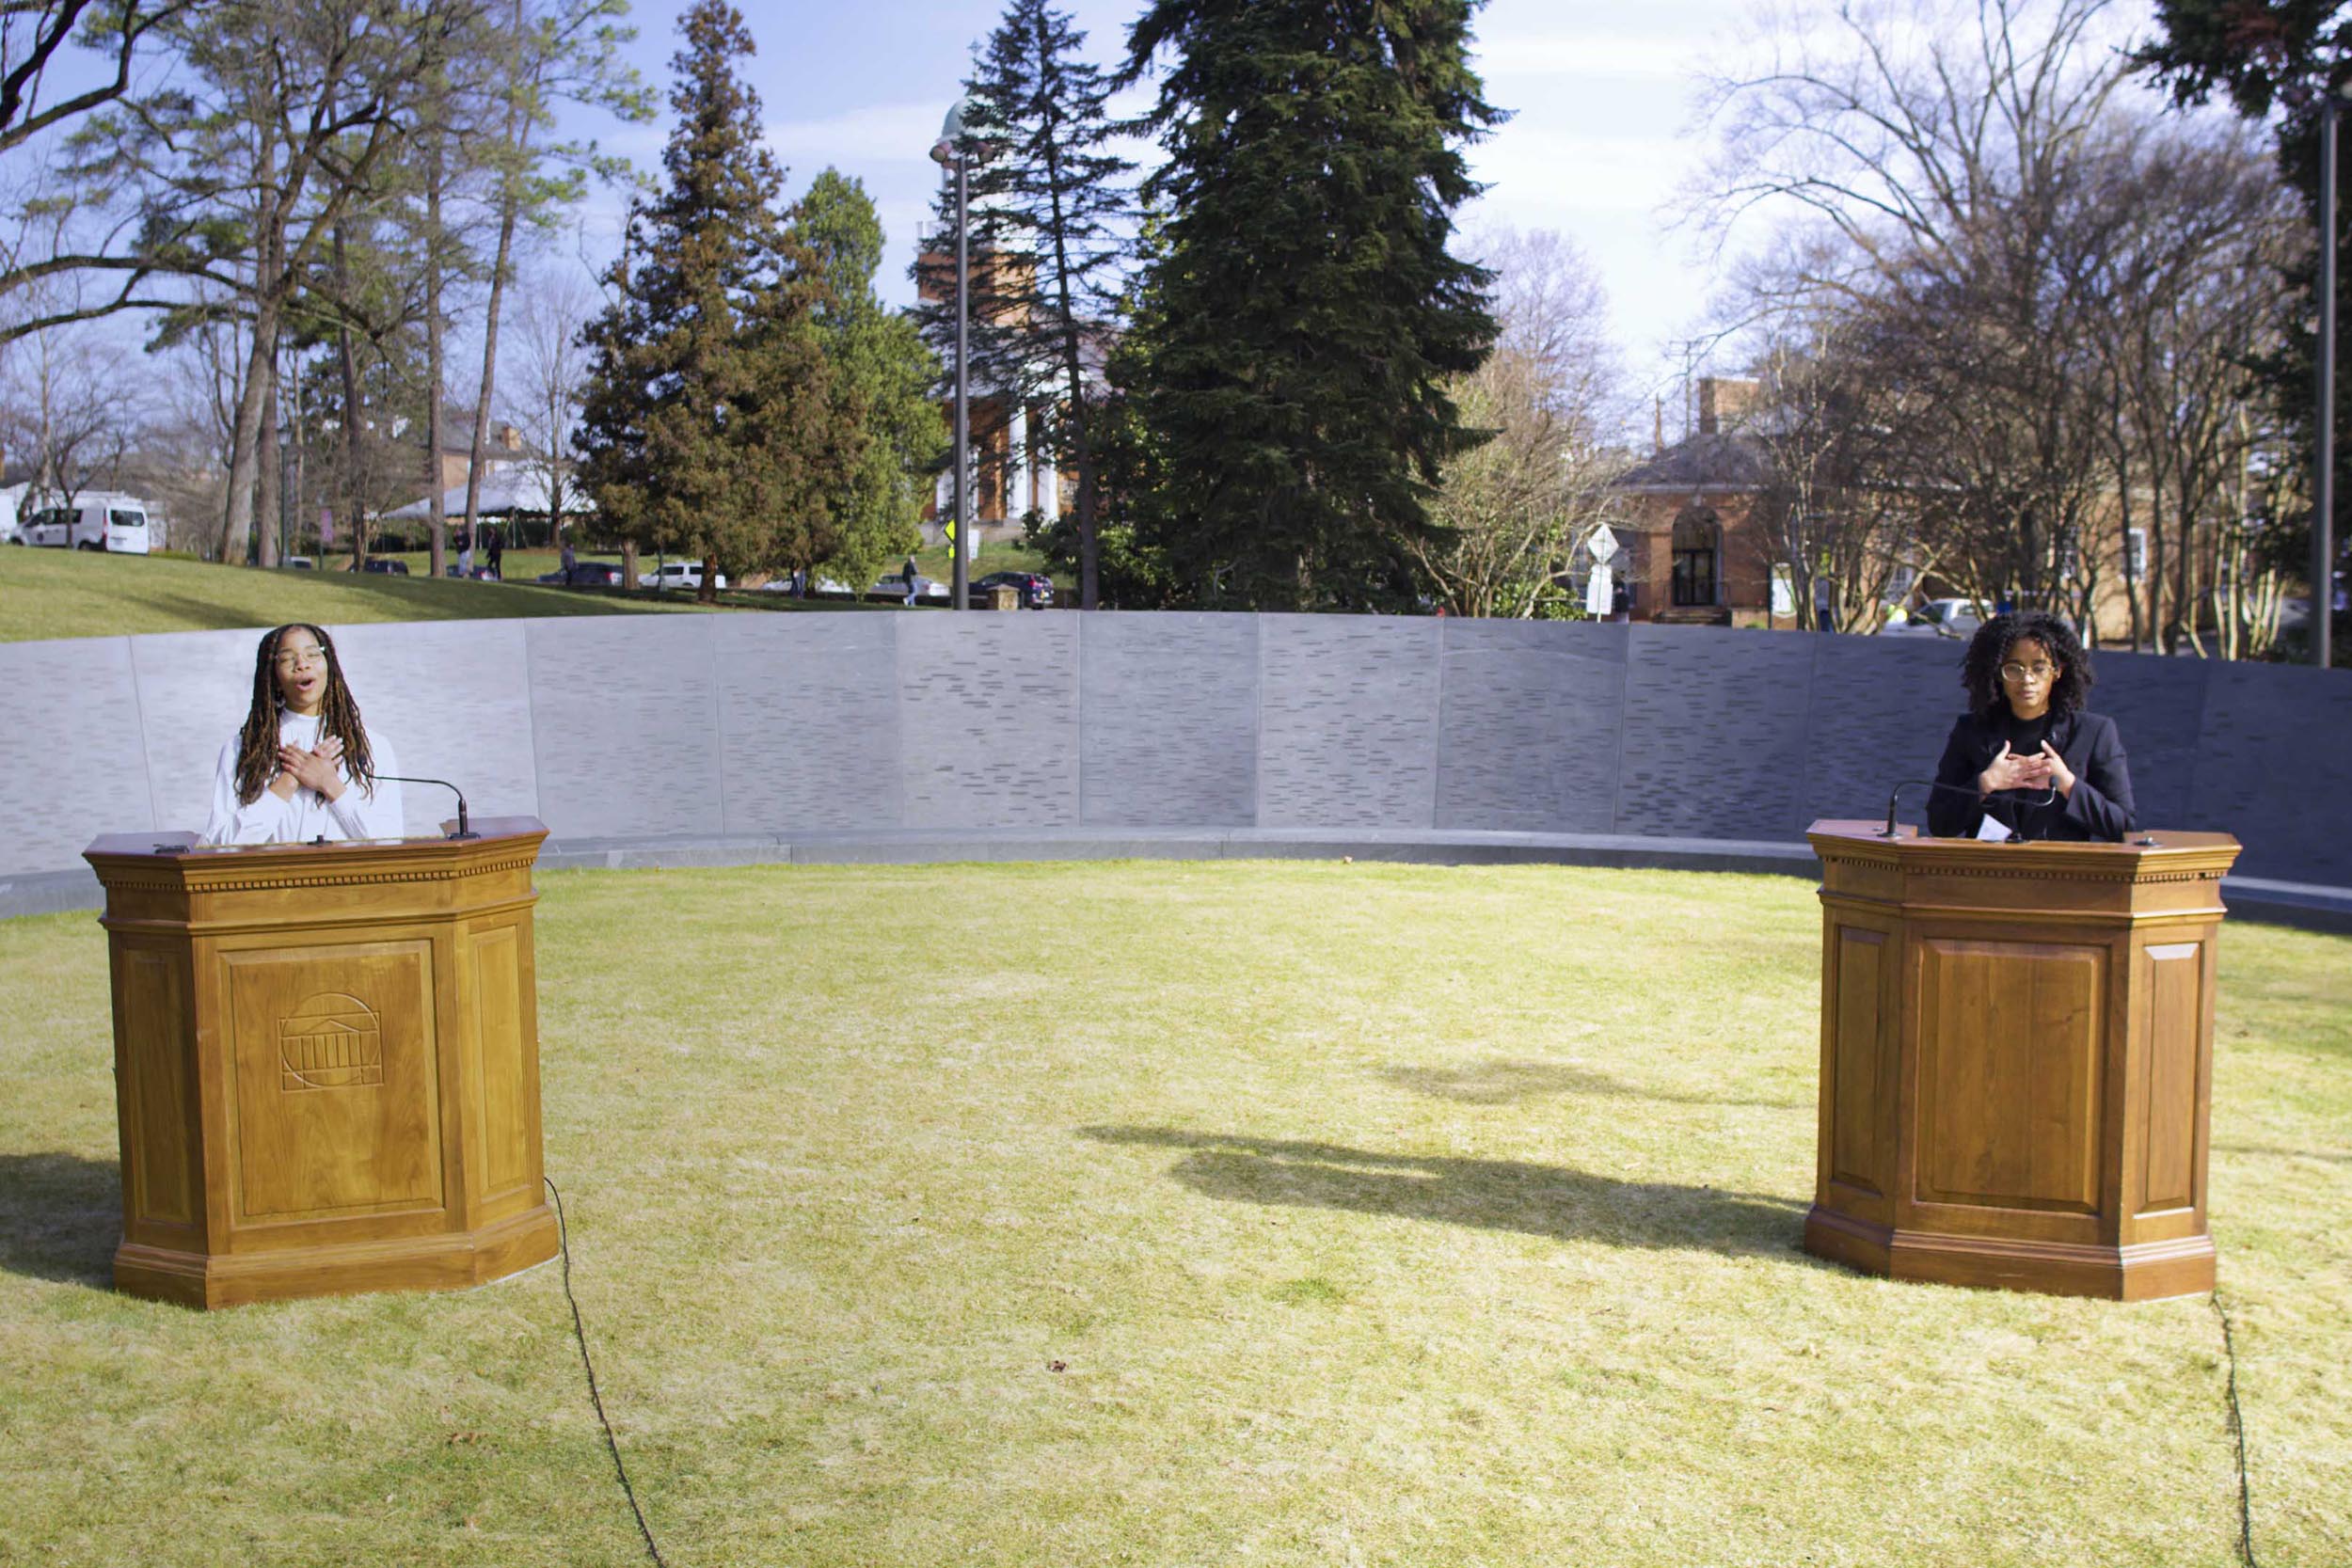 Jayla Hart and Salem Zelalem speak at podiums at the memorial for Enslaved Laborers